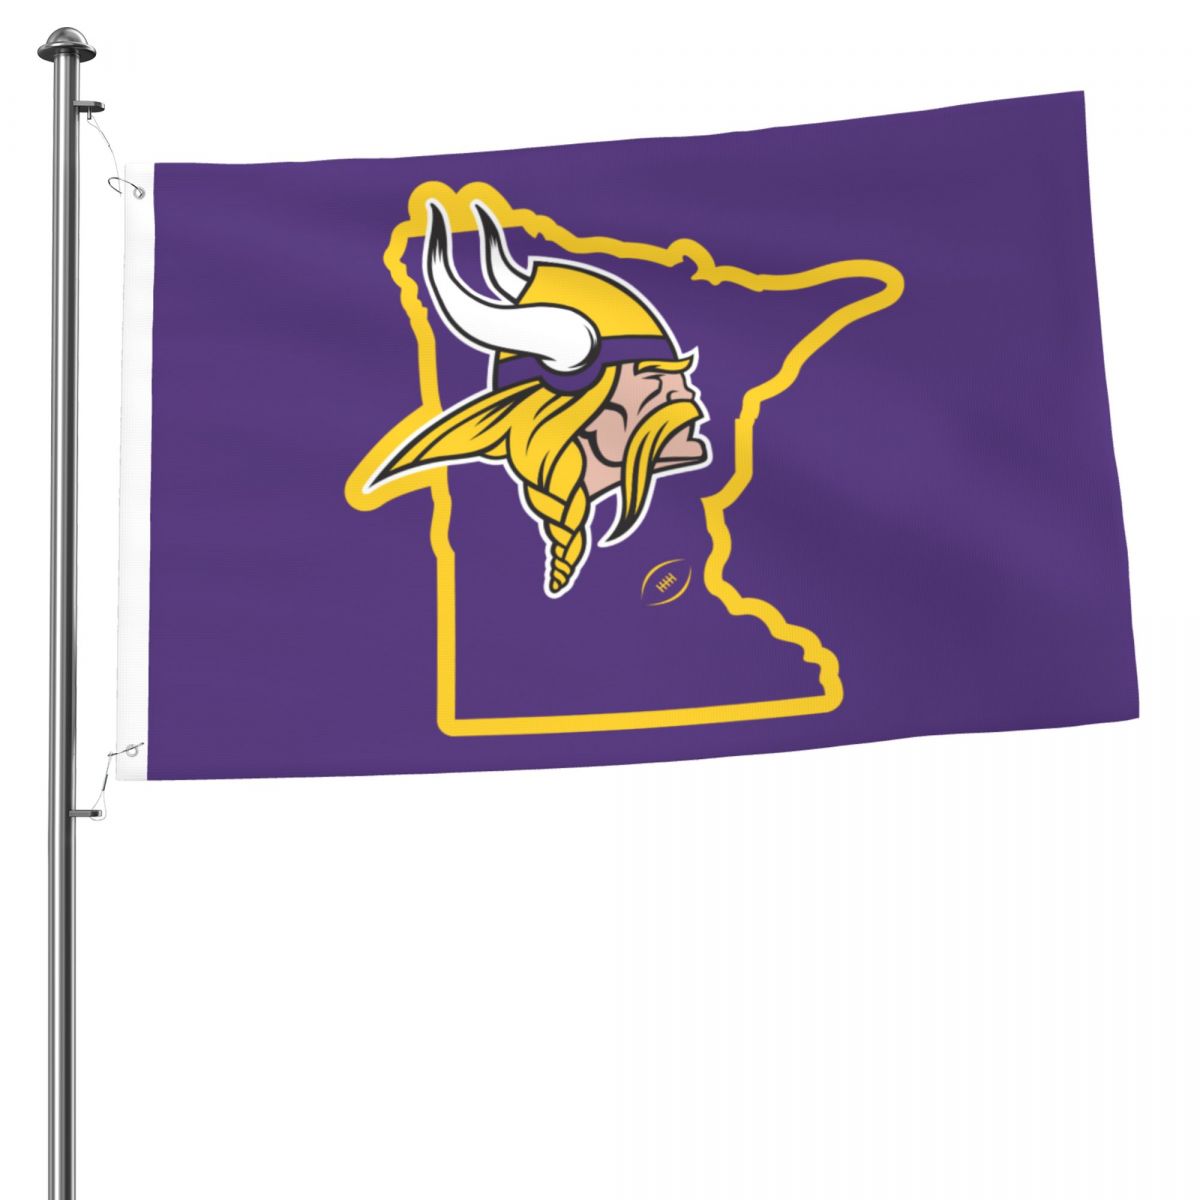 Minnesota Vikings Map 2x3 FT UV Resistant Flag